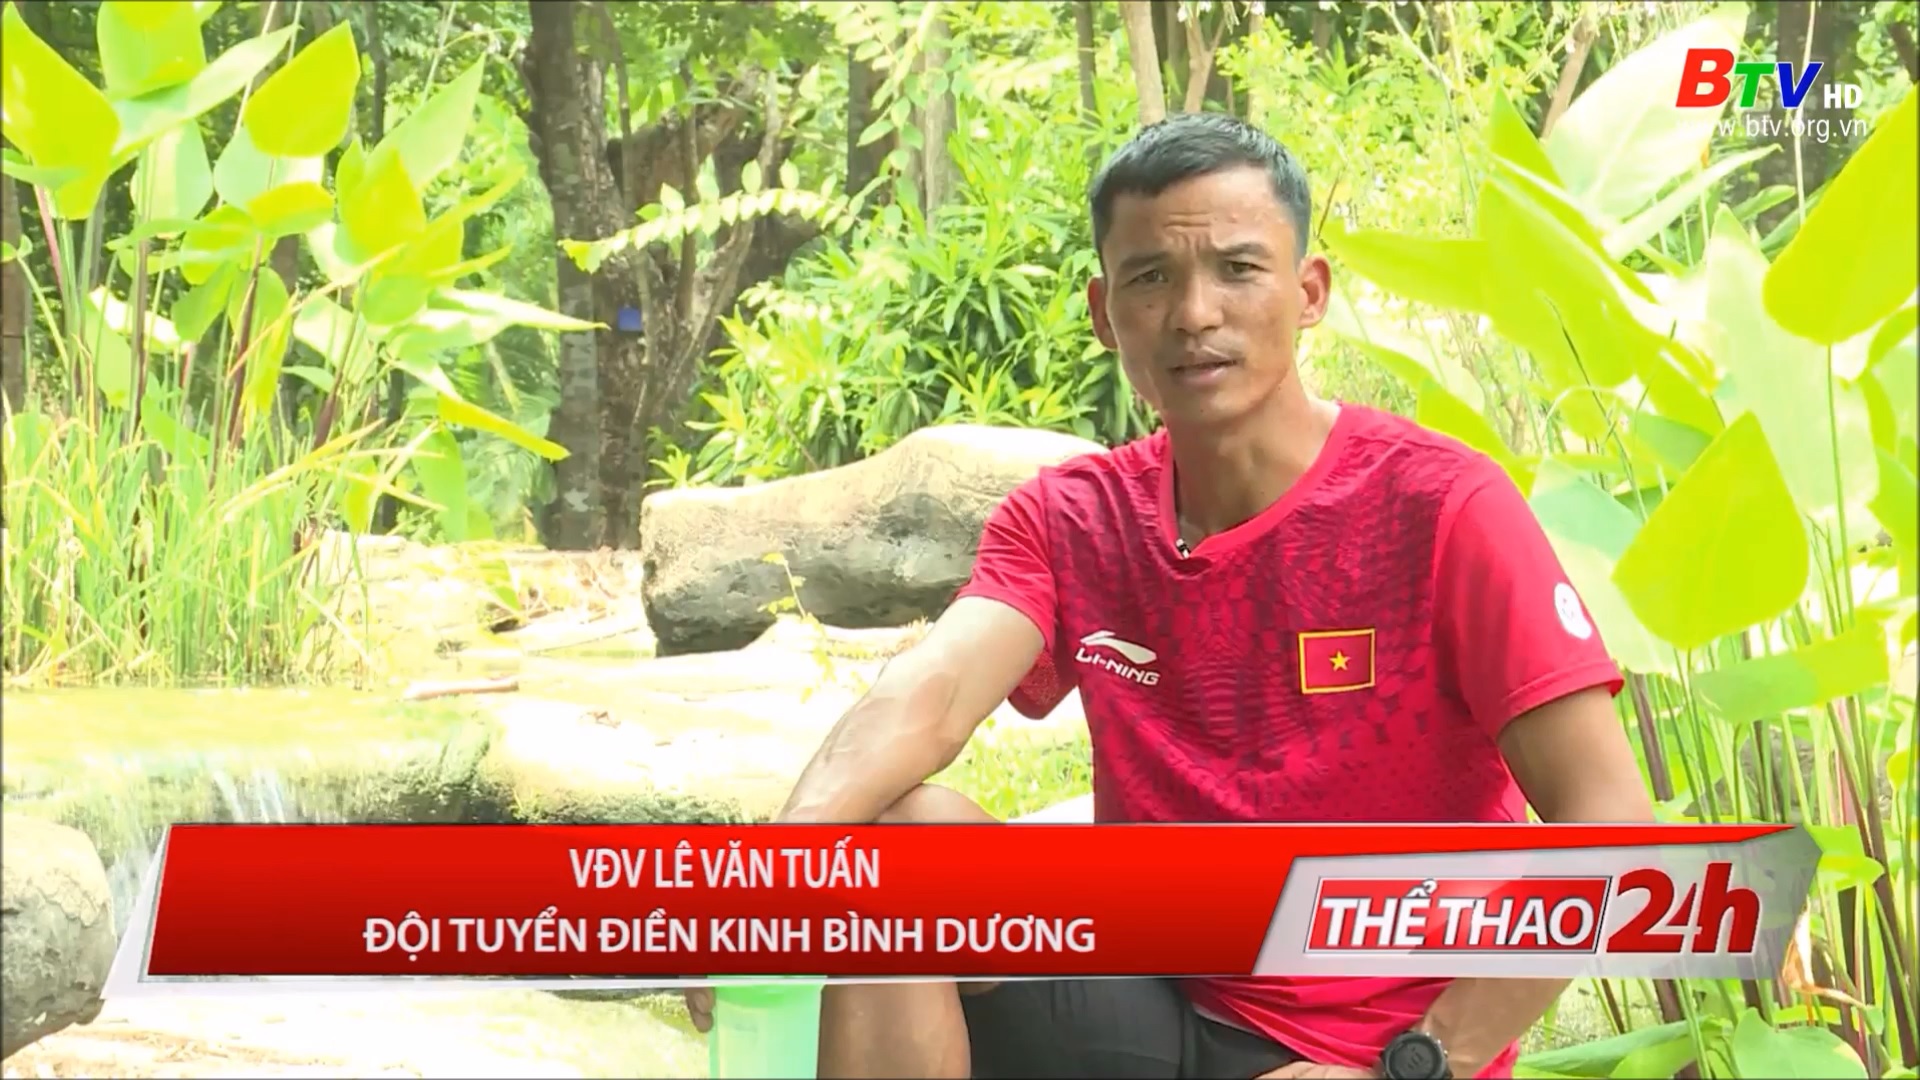 Lê Văn Tuấn – Lần đầu tham dự SEA Games ở tuổi 38